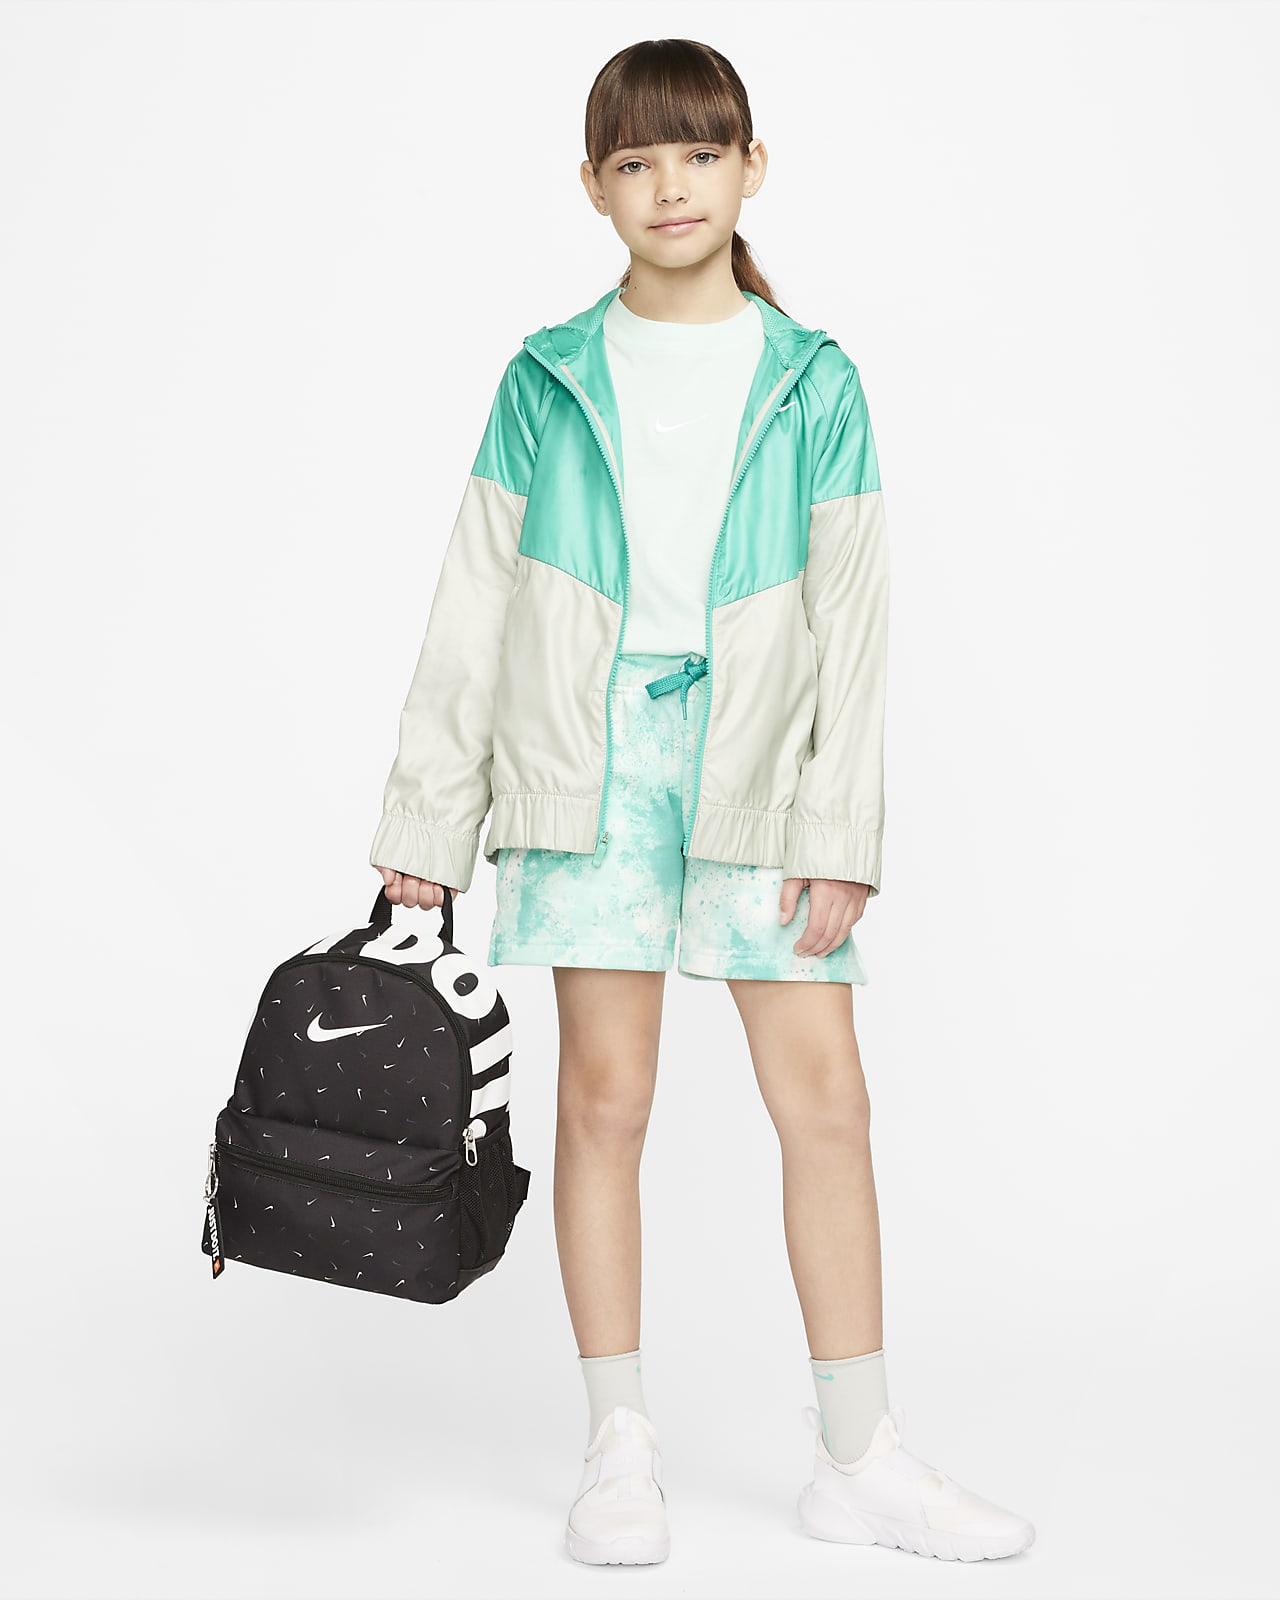 Nike Brasilia JDI Kids Printed Mini Backpack (11L)